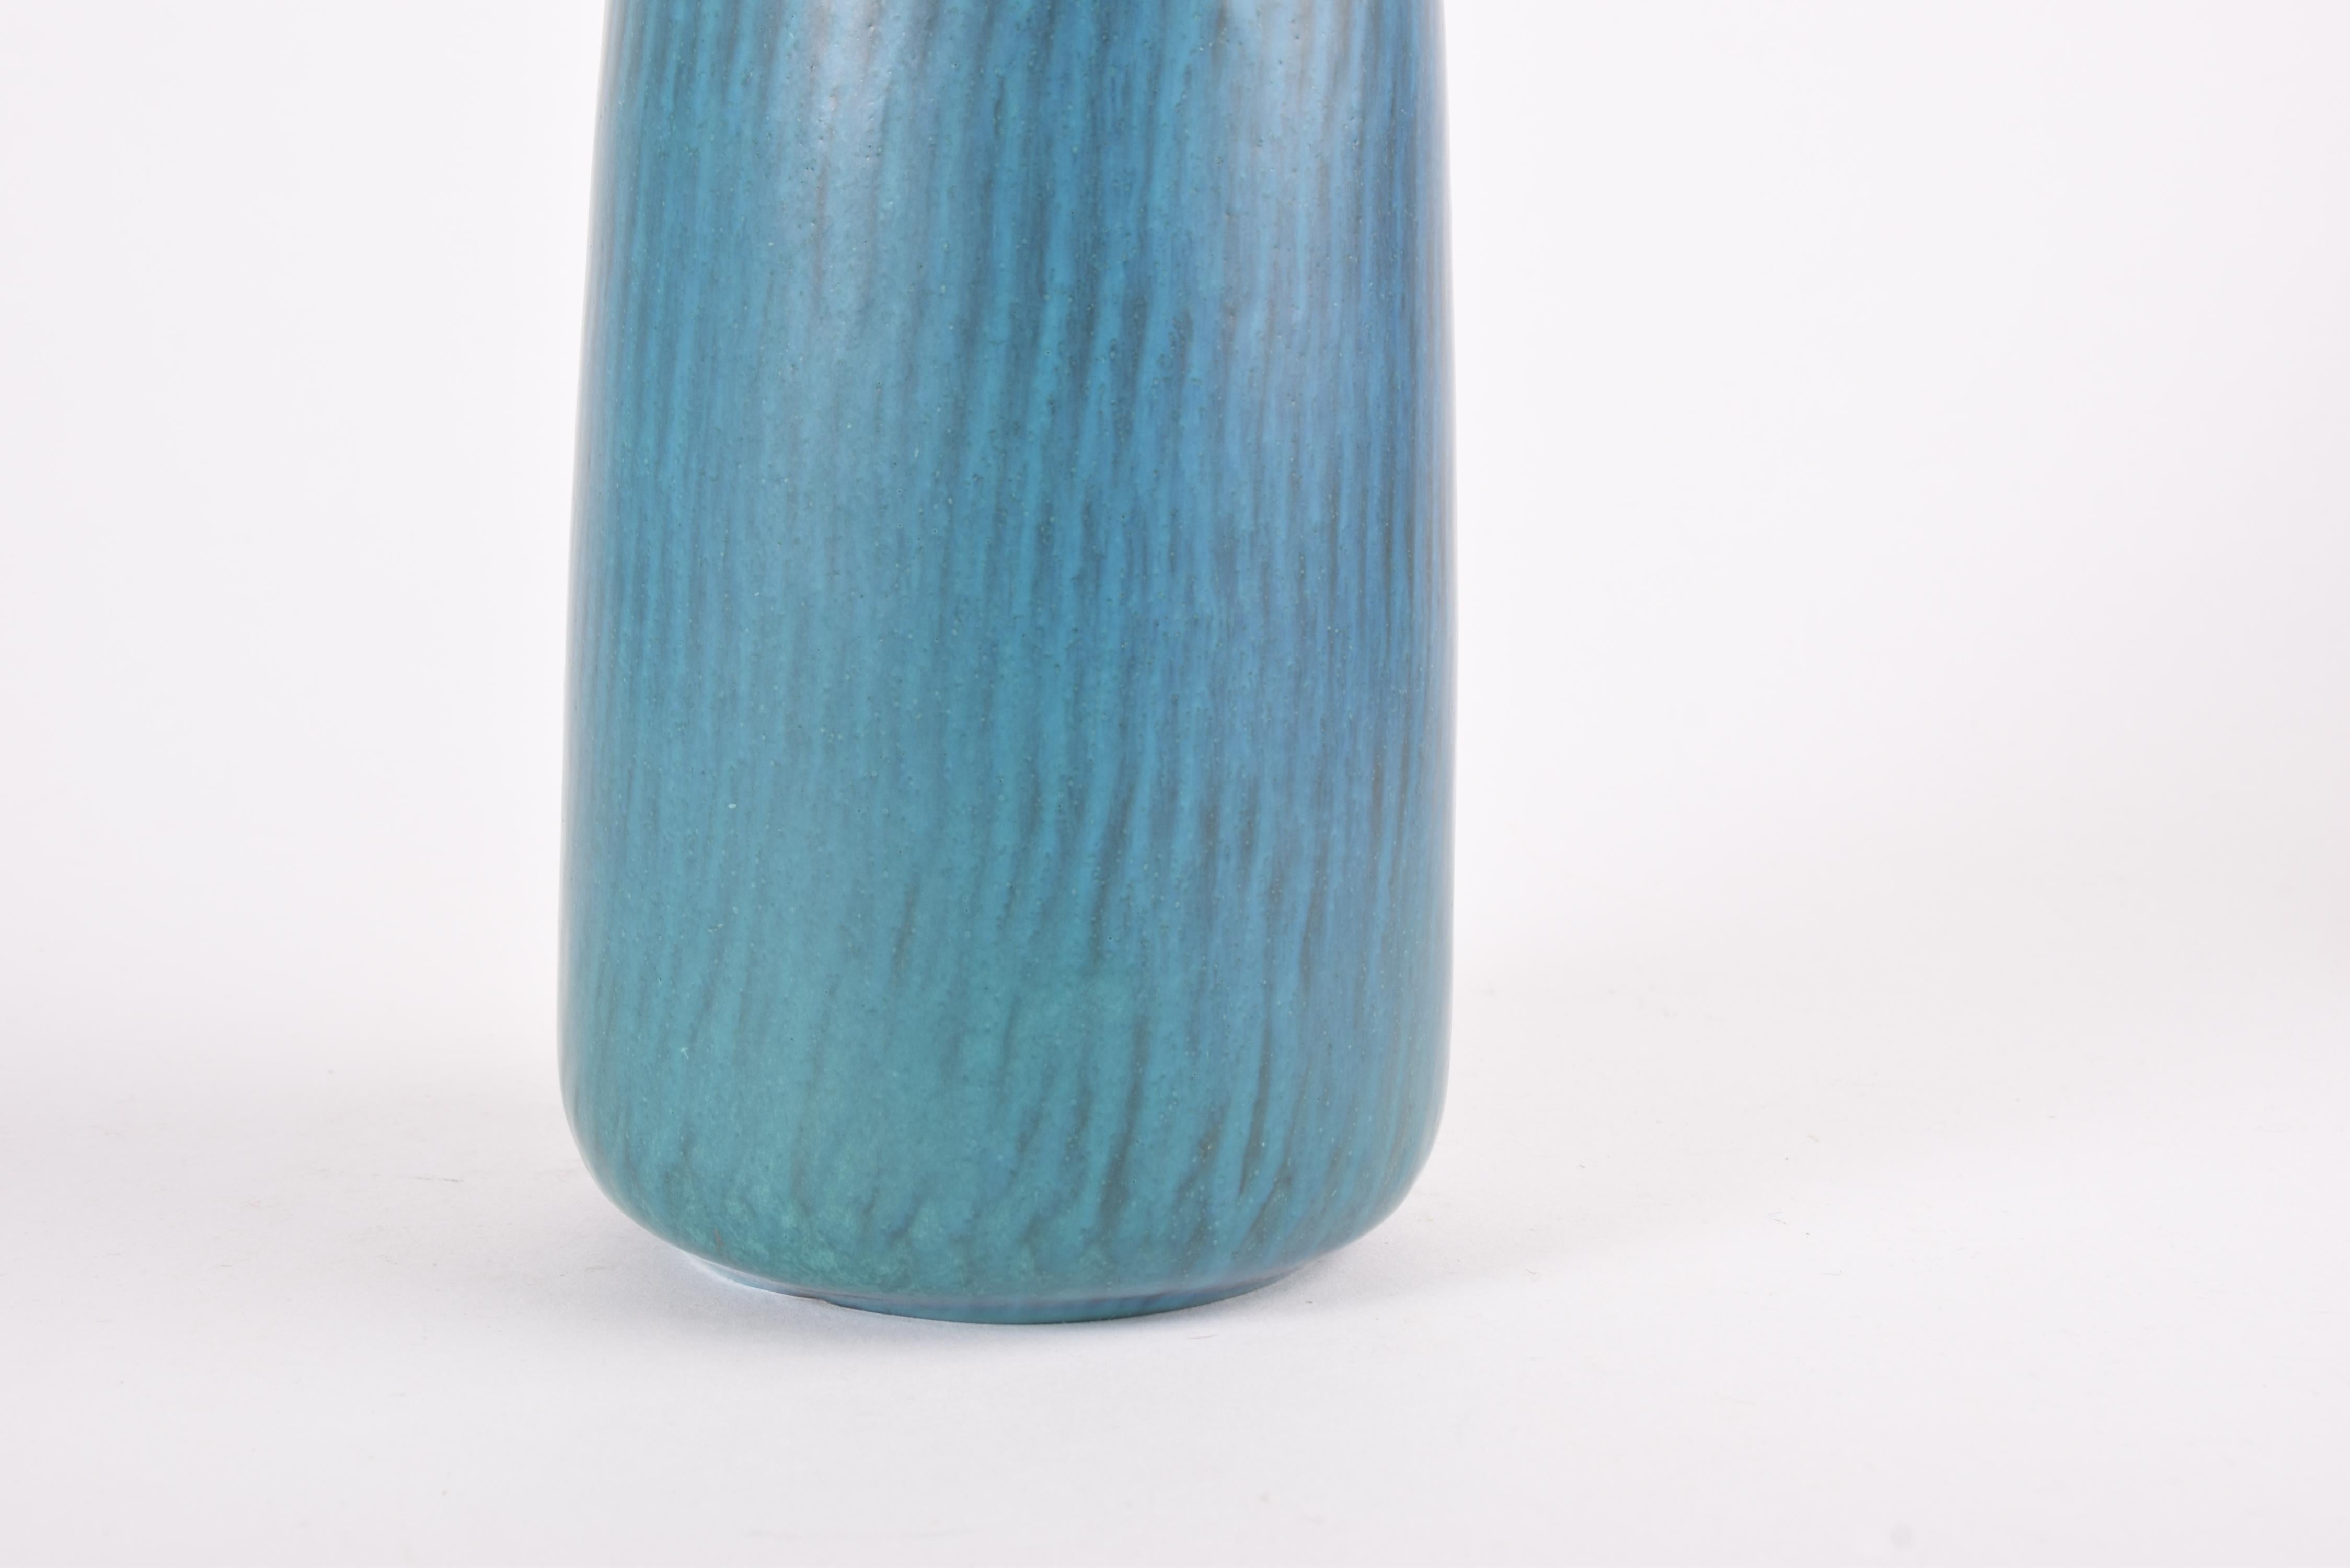 Glazed Gunnar Nylund for Nymølle Tall Vase Turquoise Blue, Scandinavian Modern 1960s For Sale